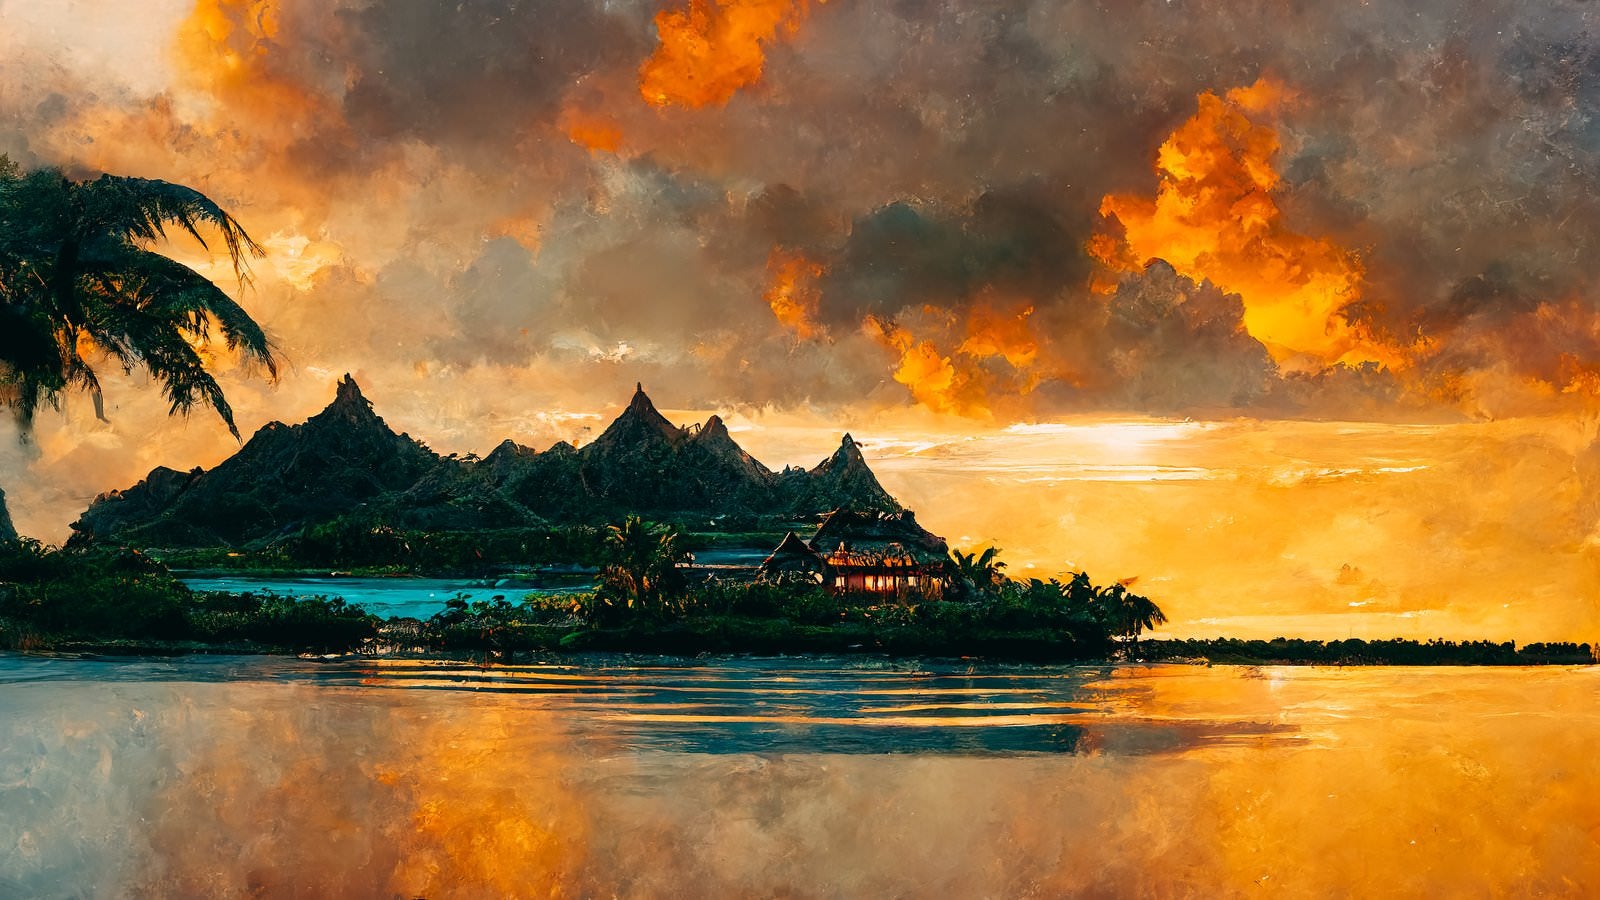 「夕焼け空と南国の島」の写真